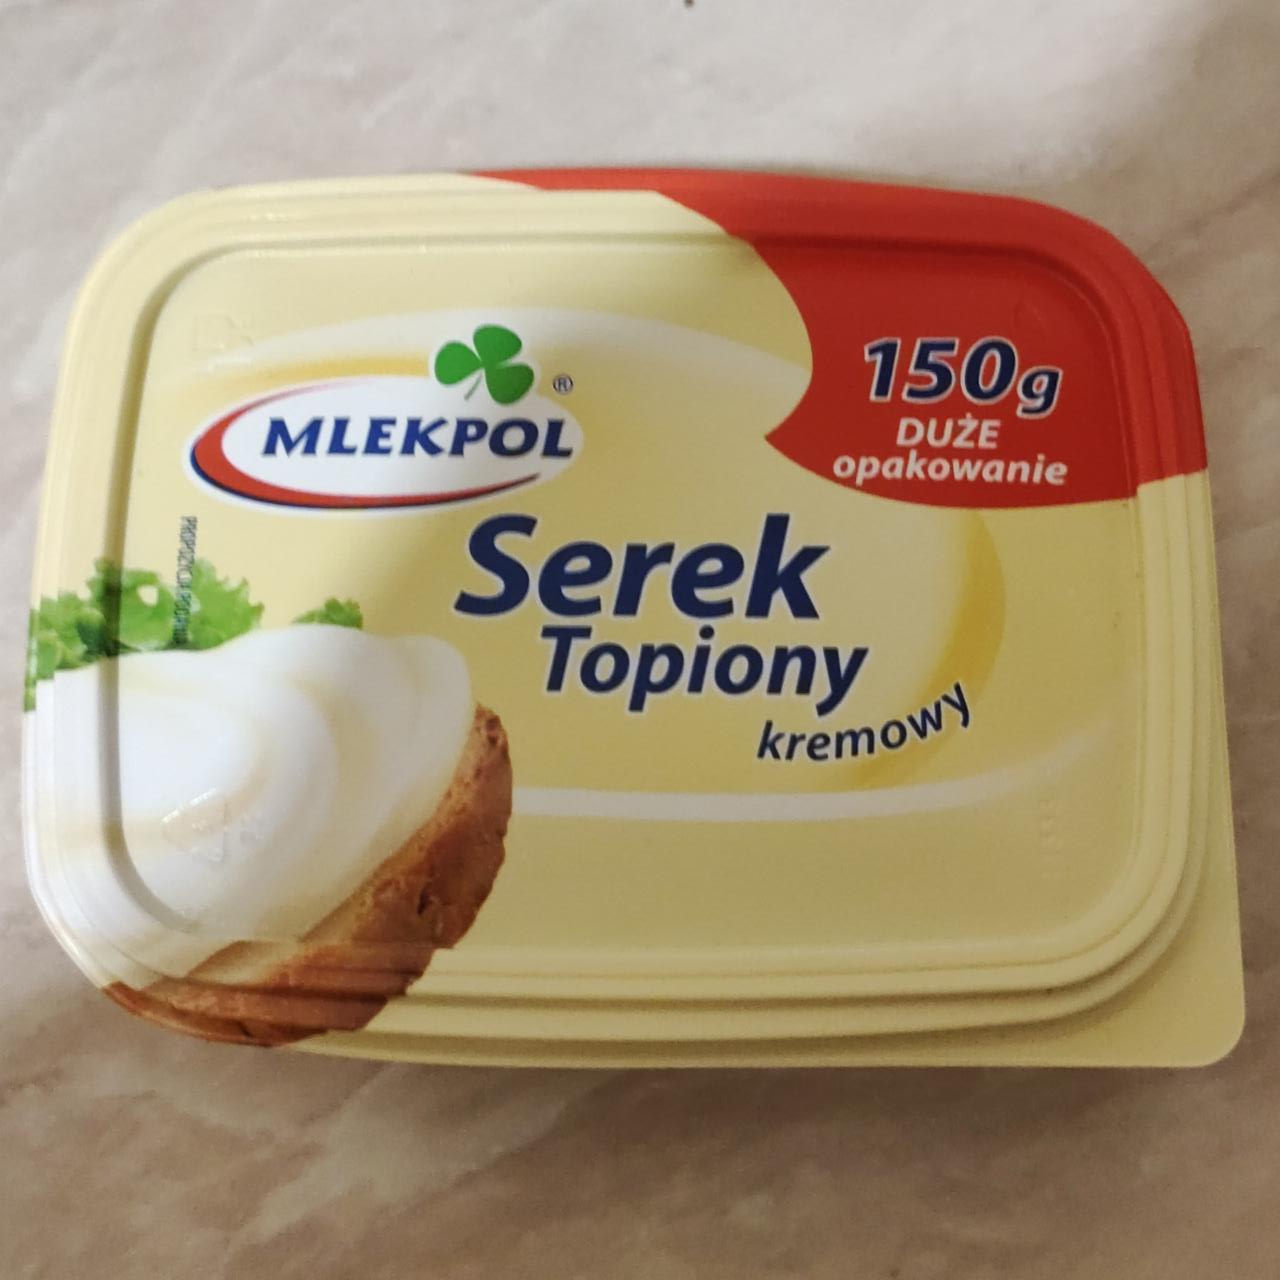 Фото - Сыр сливочный Serek Topiony Kremowy Mlekpol